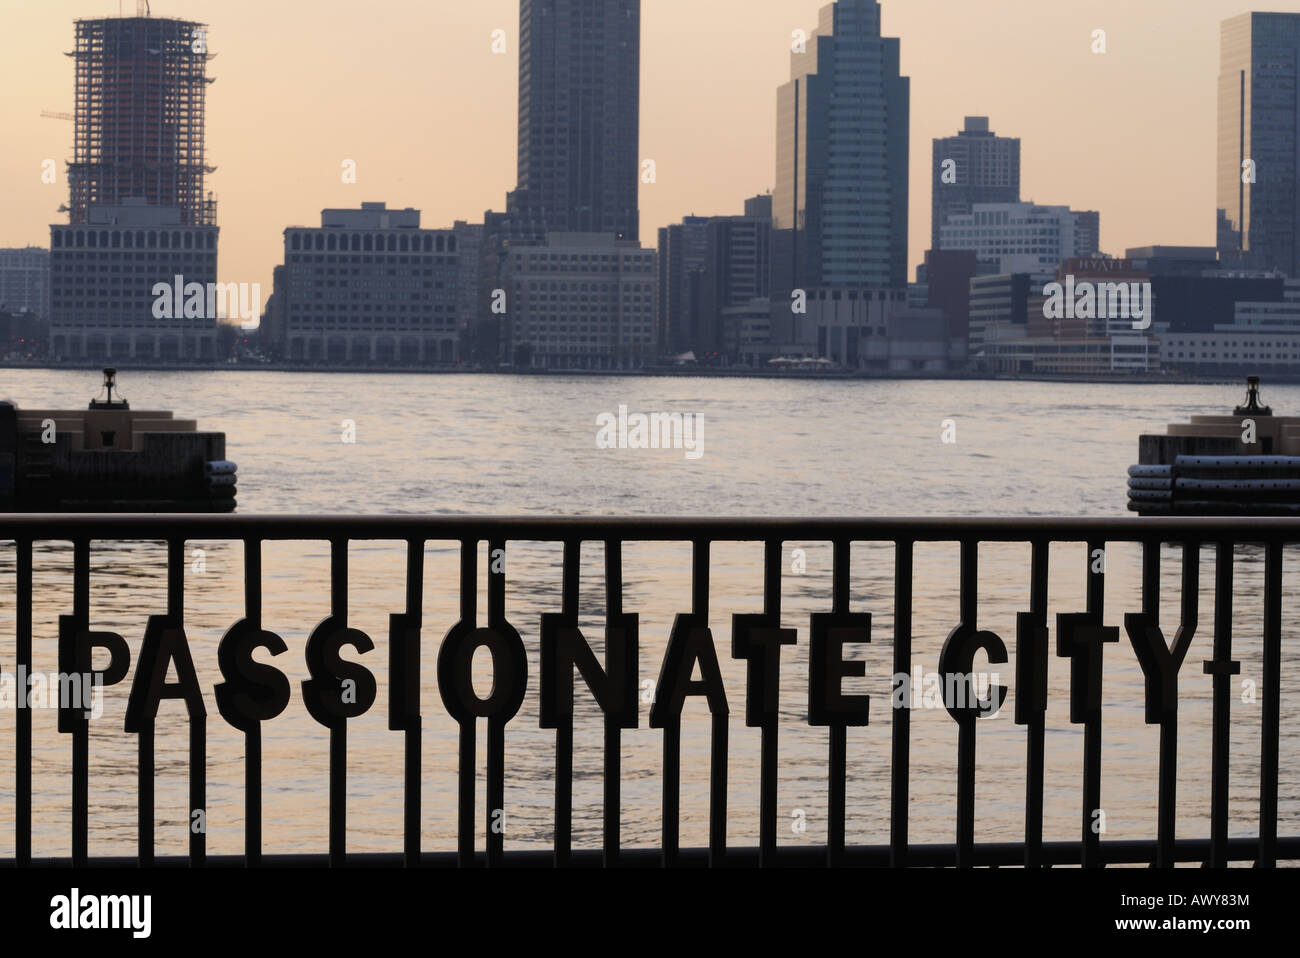 Une balustrade dans Battery Park City intègre des lignes d'un poème de Walt Whitman décrivant l'énergie de la ville de New York et d'exubérance. Banque D'Images